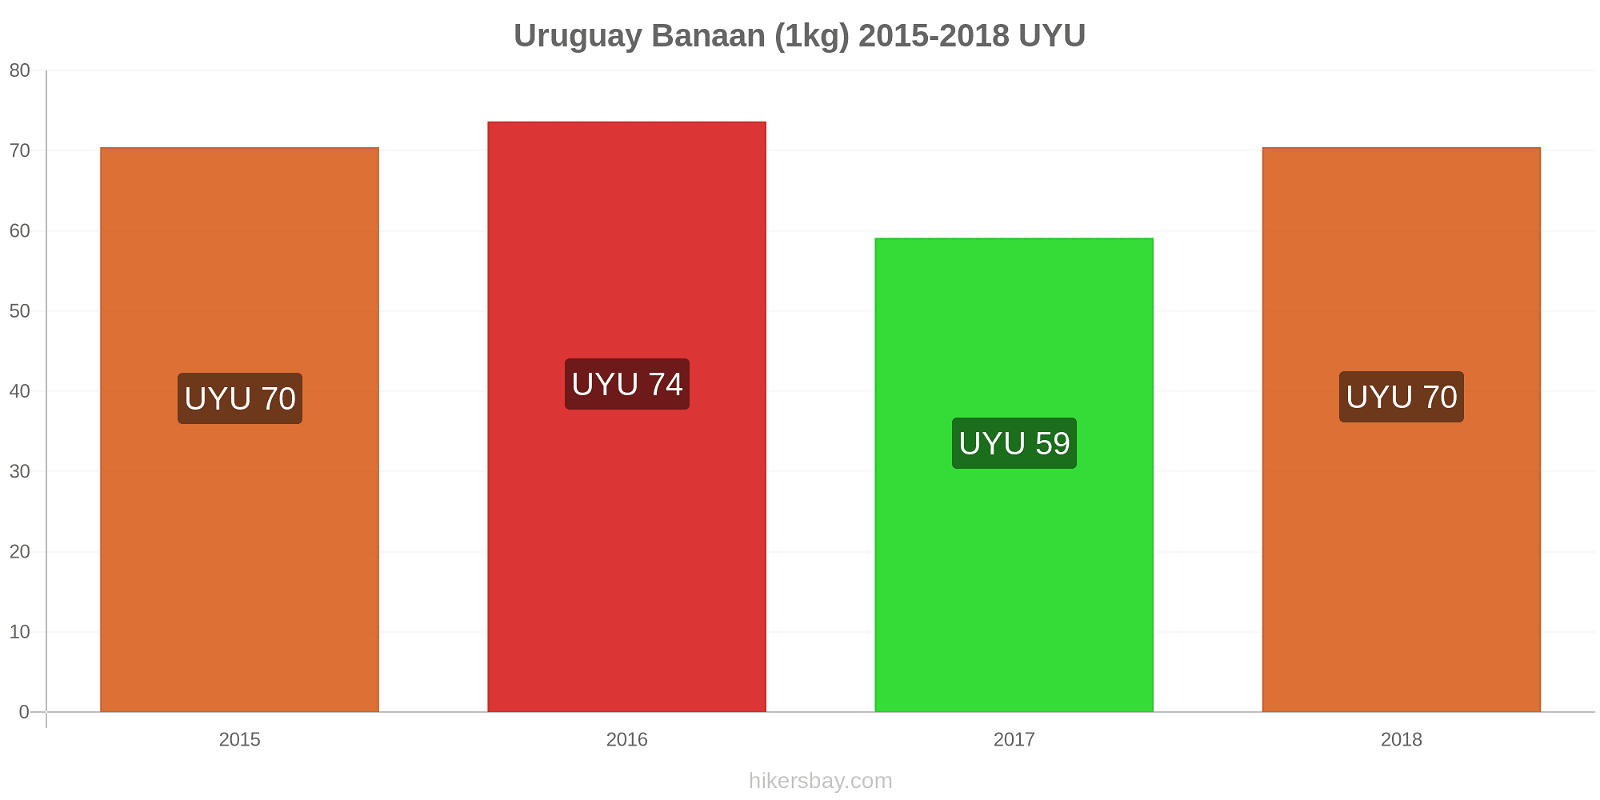 Uruguay prijswijzigingen Bananen (1kg) hikersbay.com